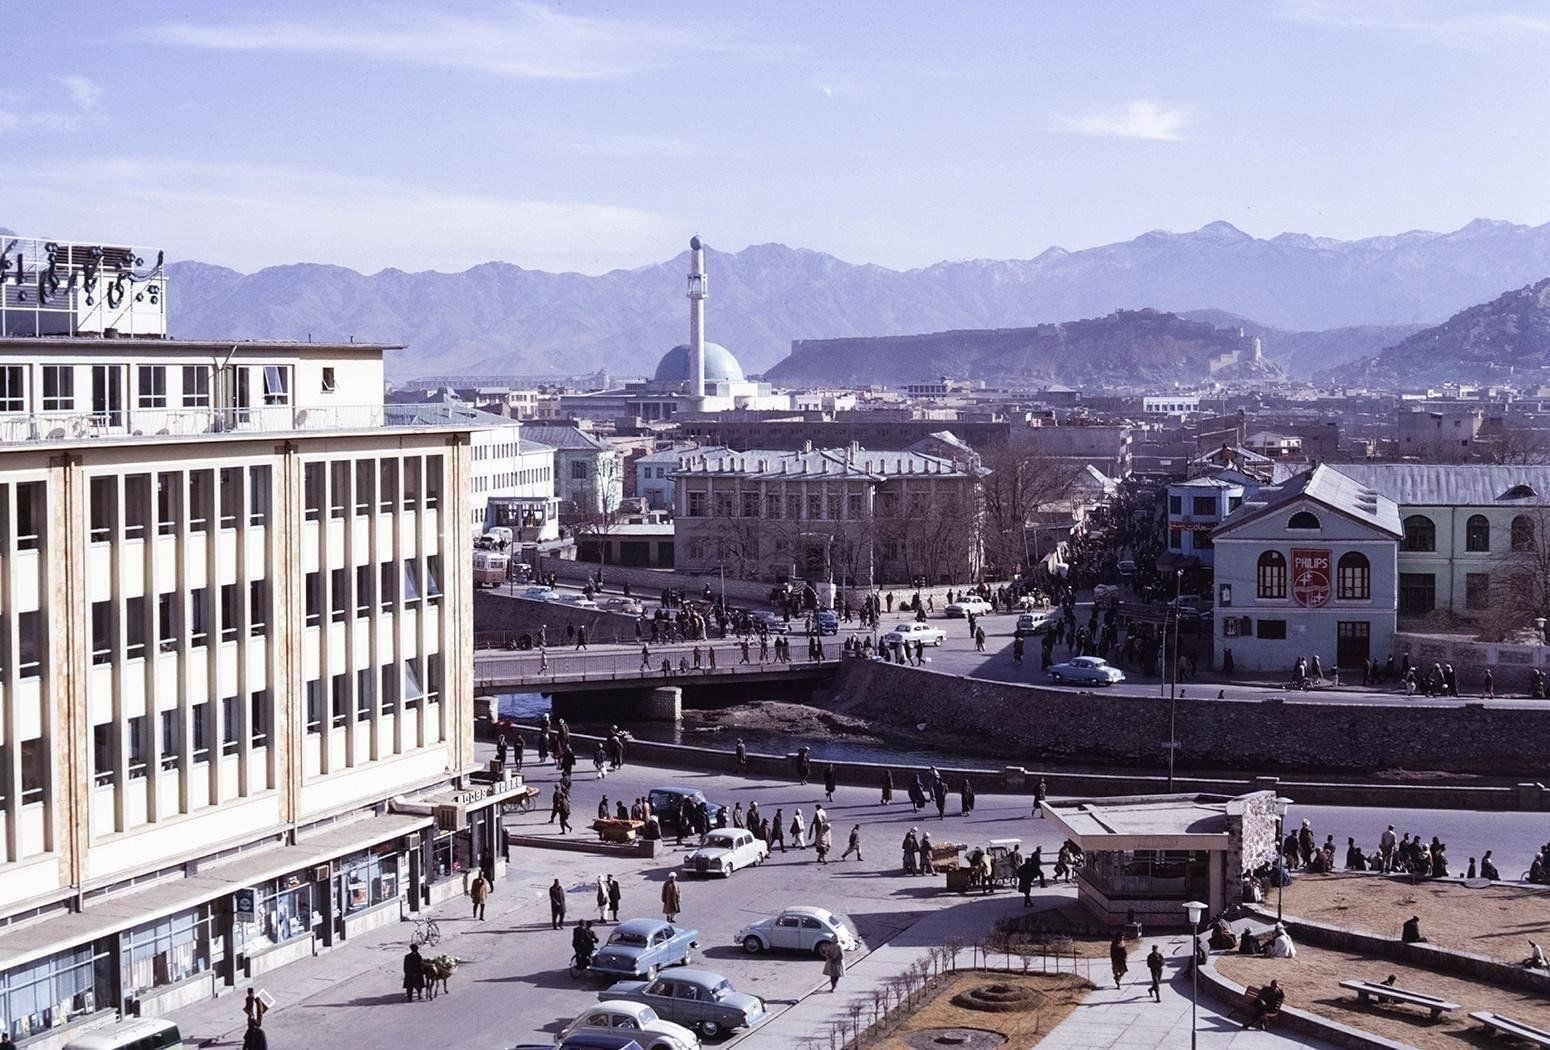 фотографии афганистана в 60 е годы